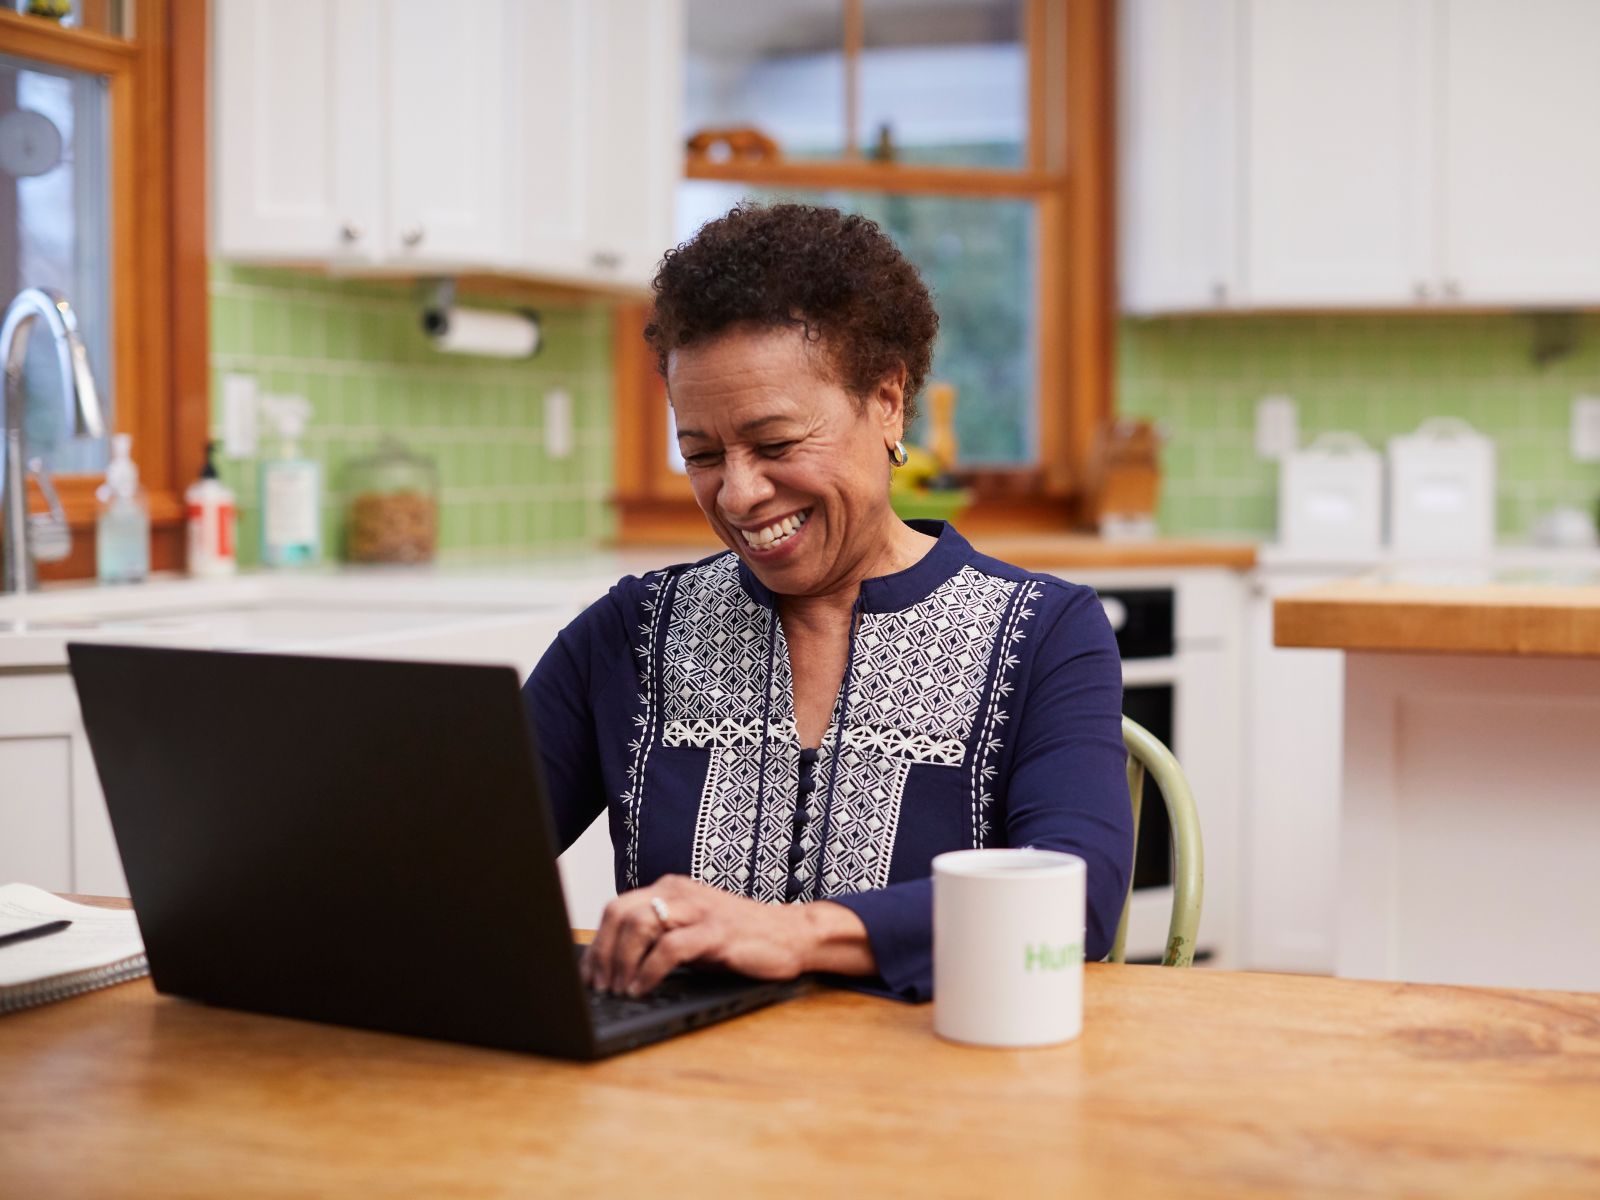 Mujer sonriendo y usando un computador portátil en una mesa.